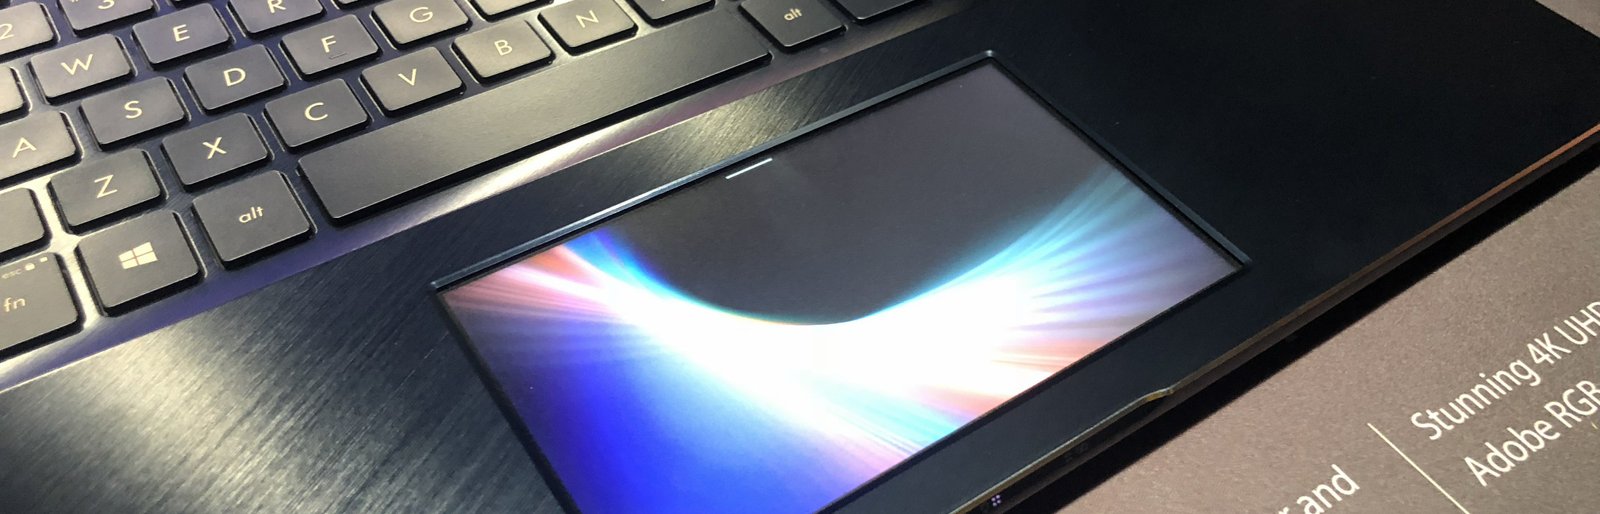 ASUS remplace le touchpad par un écran sur son Zenbook Pro